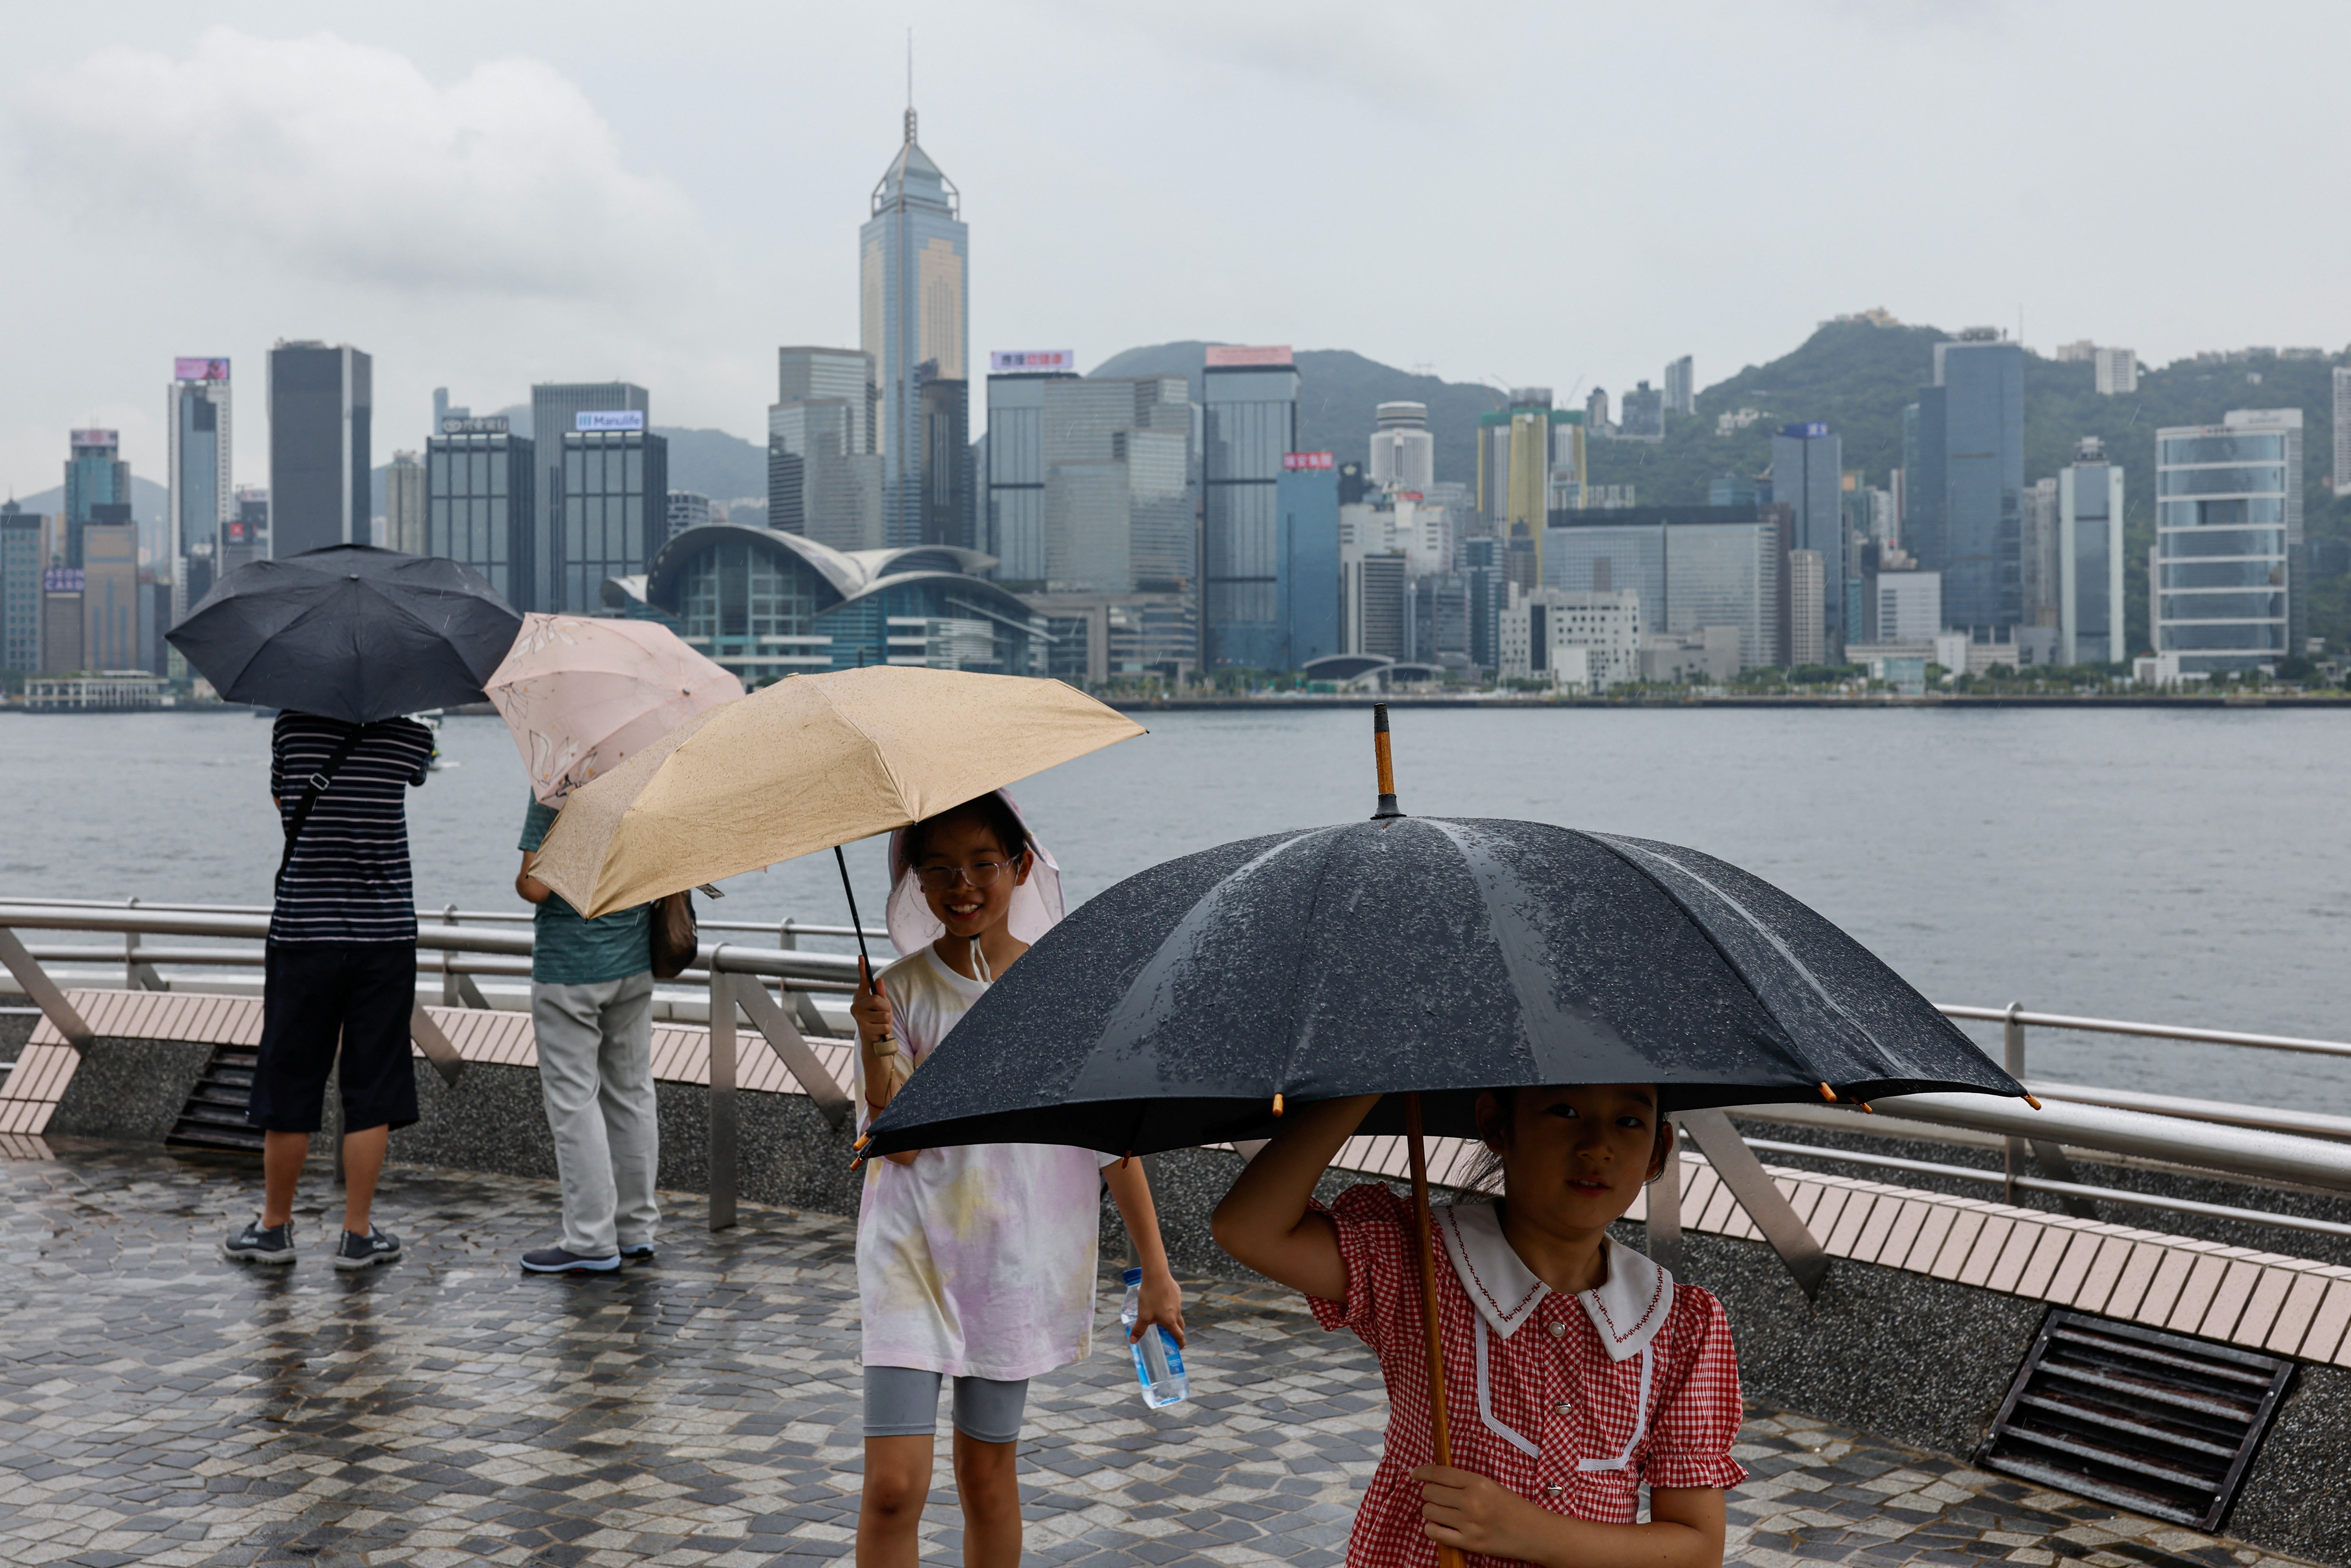 A much less pleasant Hong Kong awaits world traders